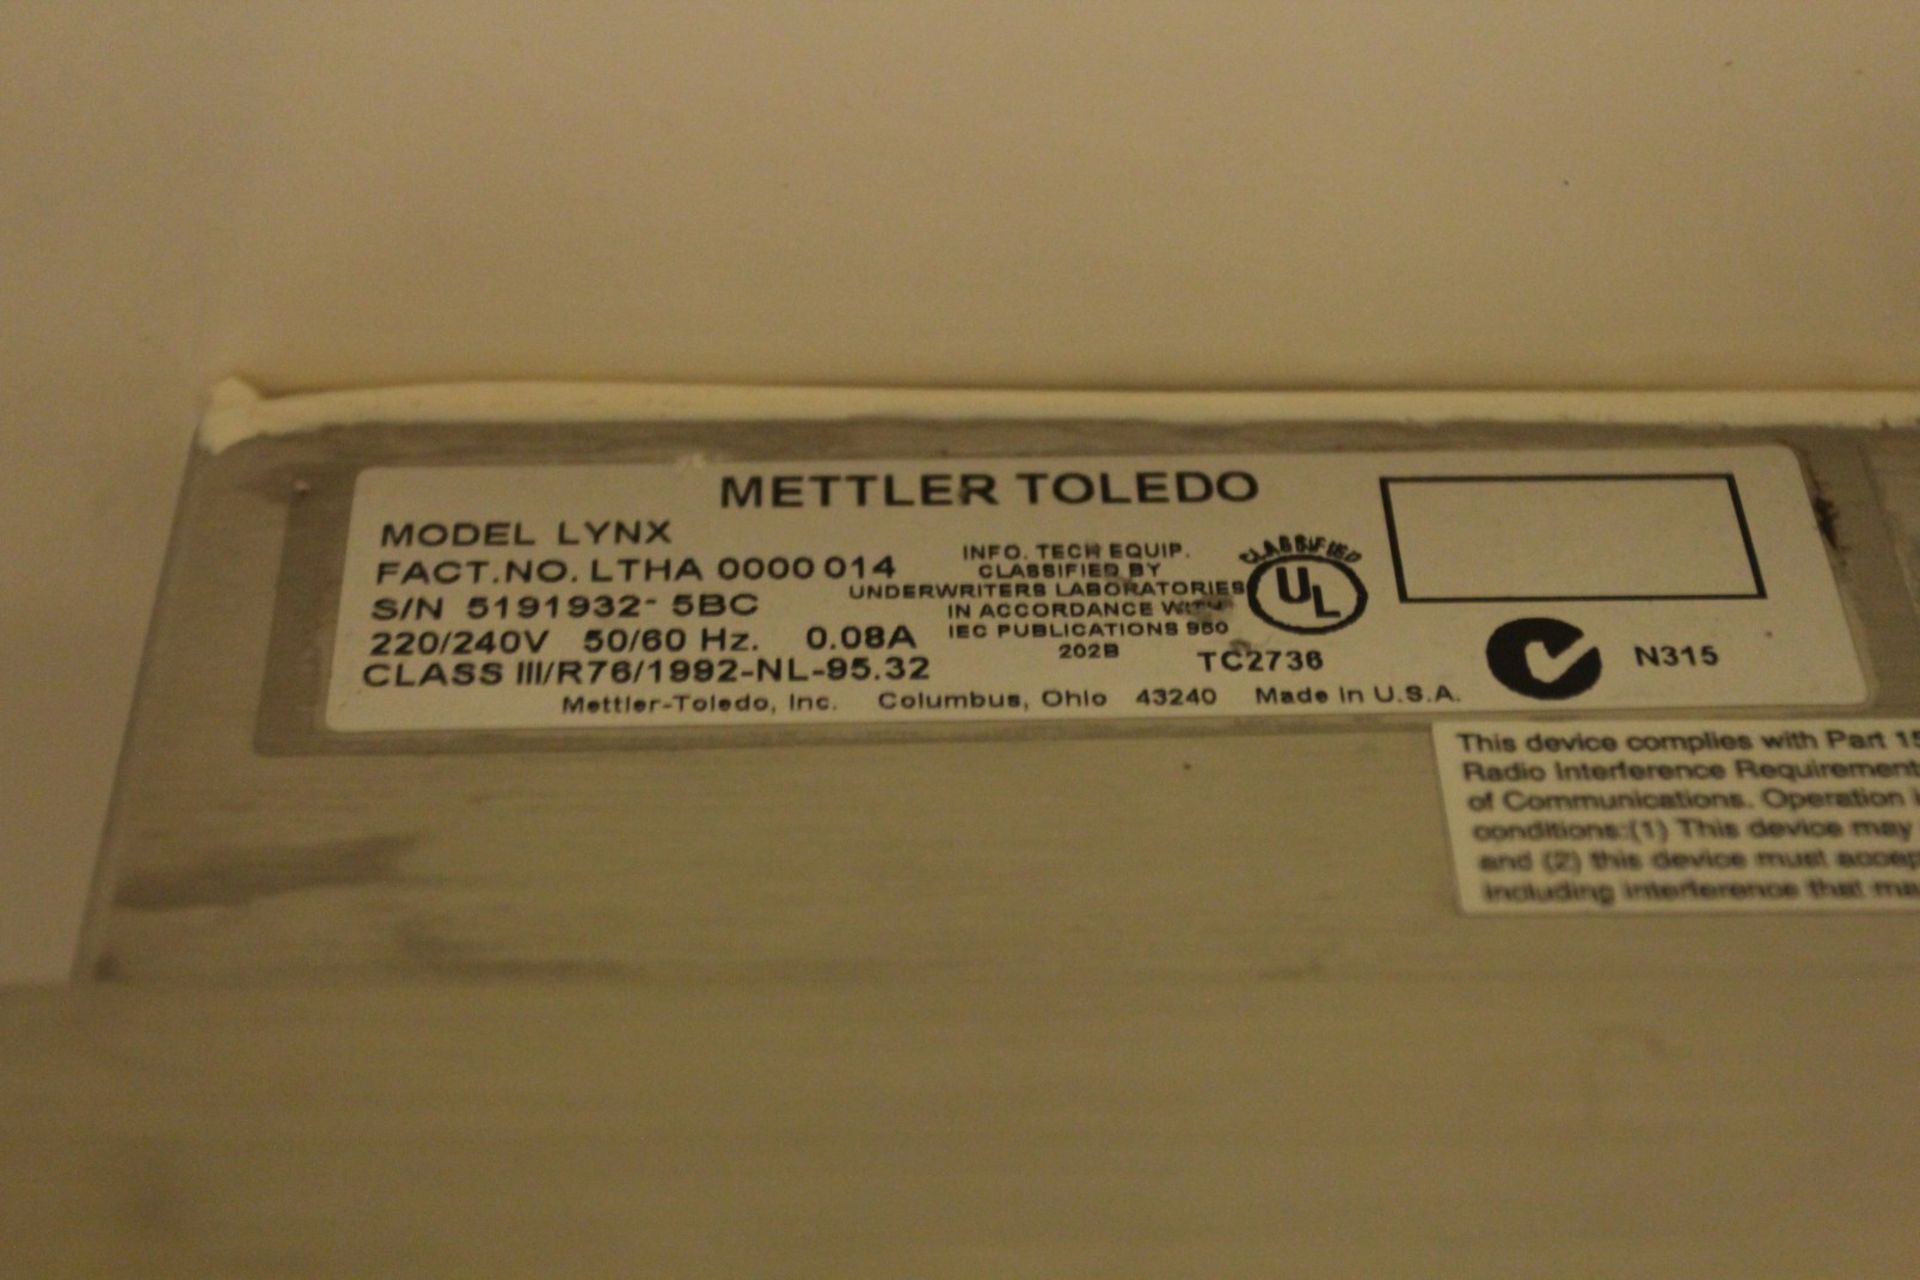 600 kg Stainless Steel Floor Scale w/ Mettler Toledo Lynx Digital Readout, s/n 5191935-5BC - Image 4 of 4